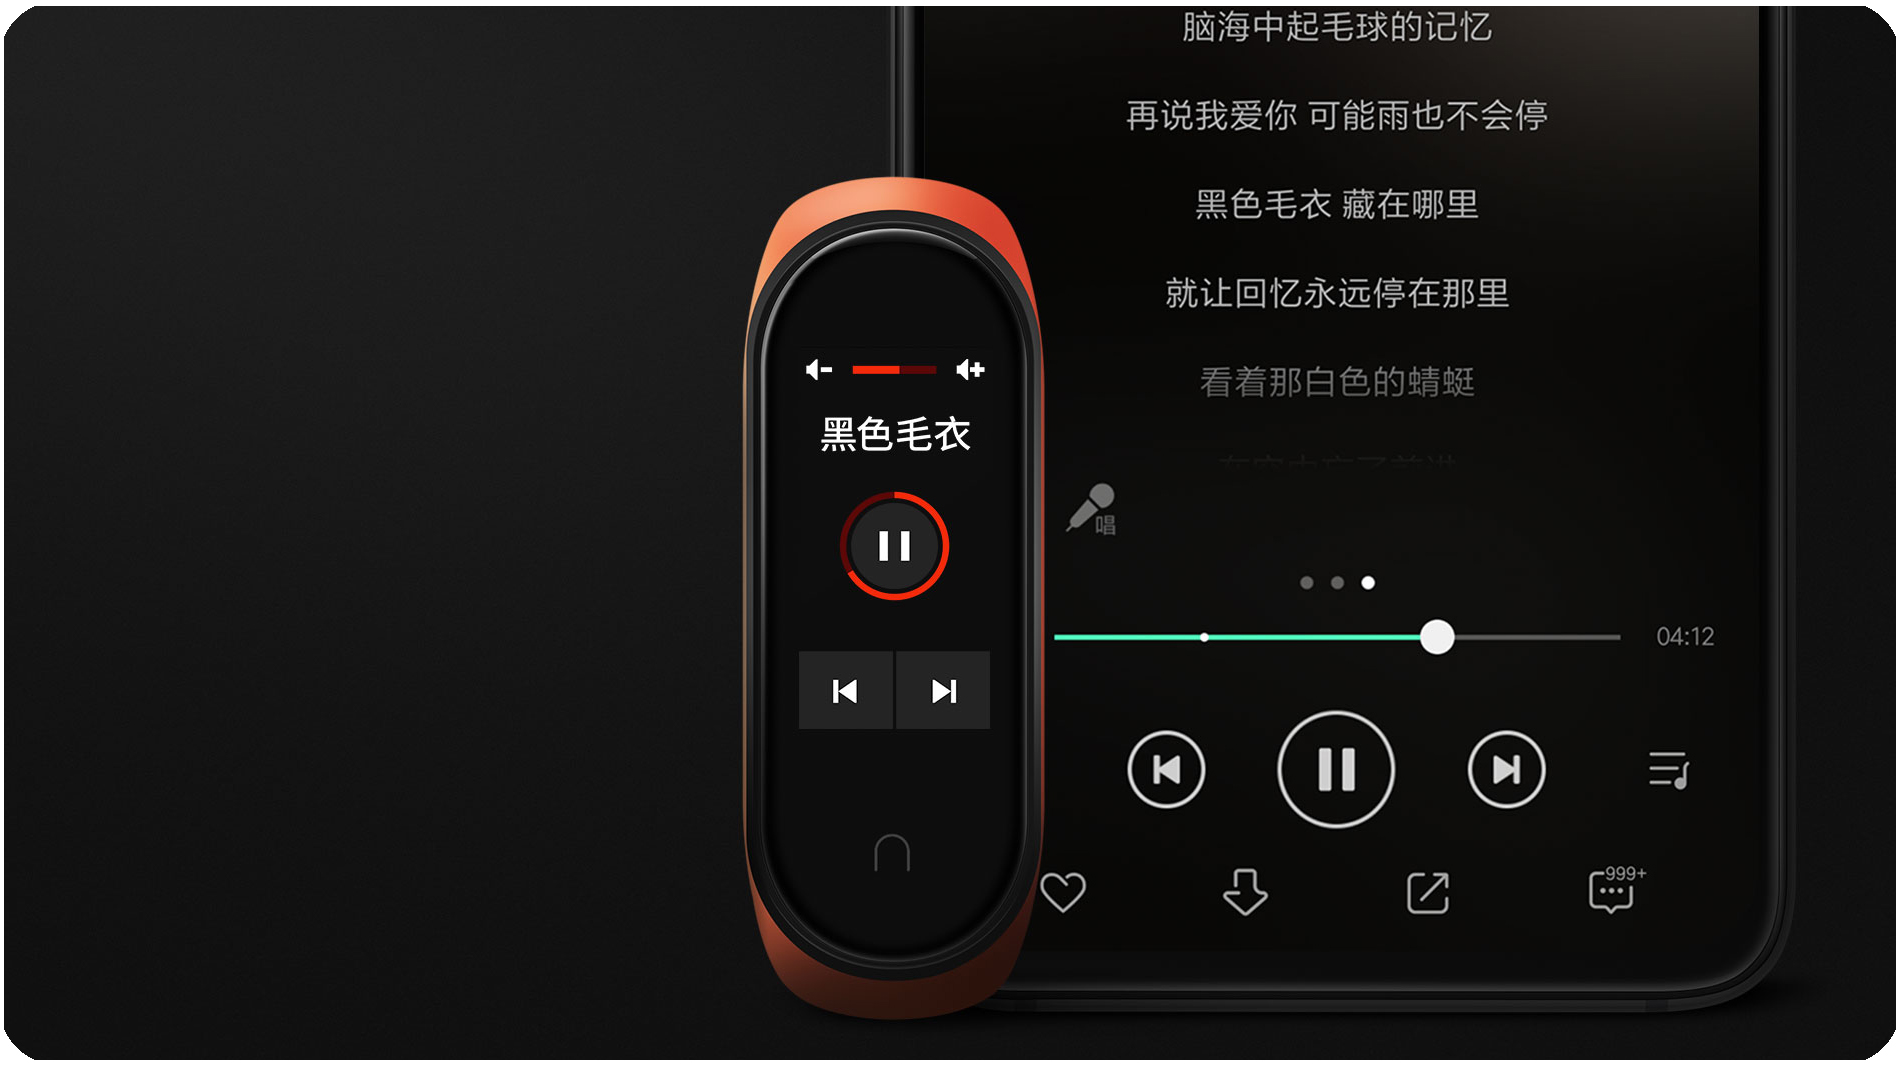 Xiaomi Mi band 4